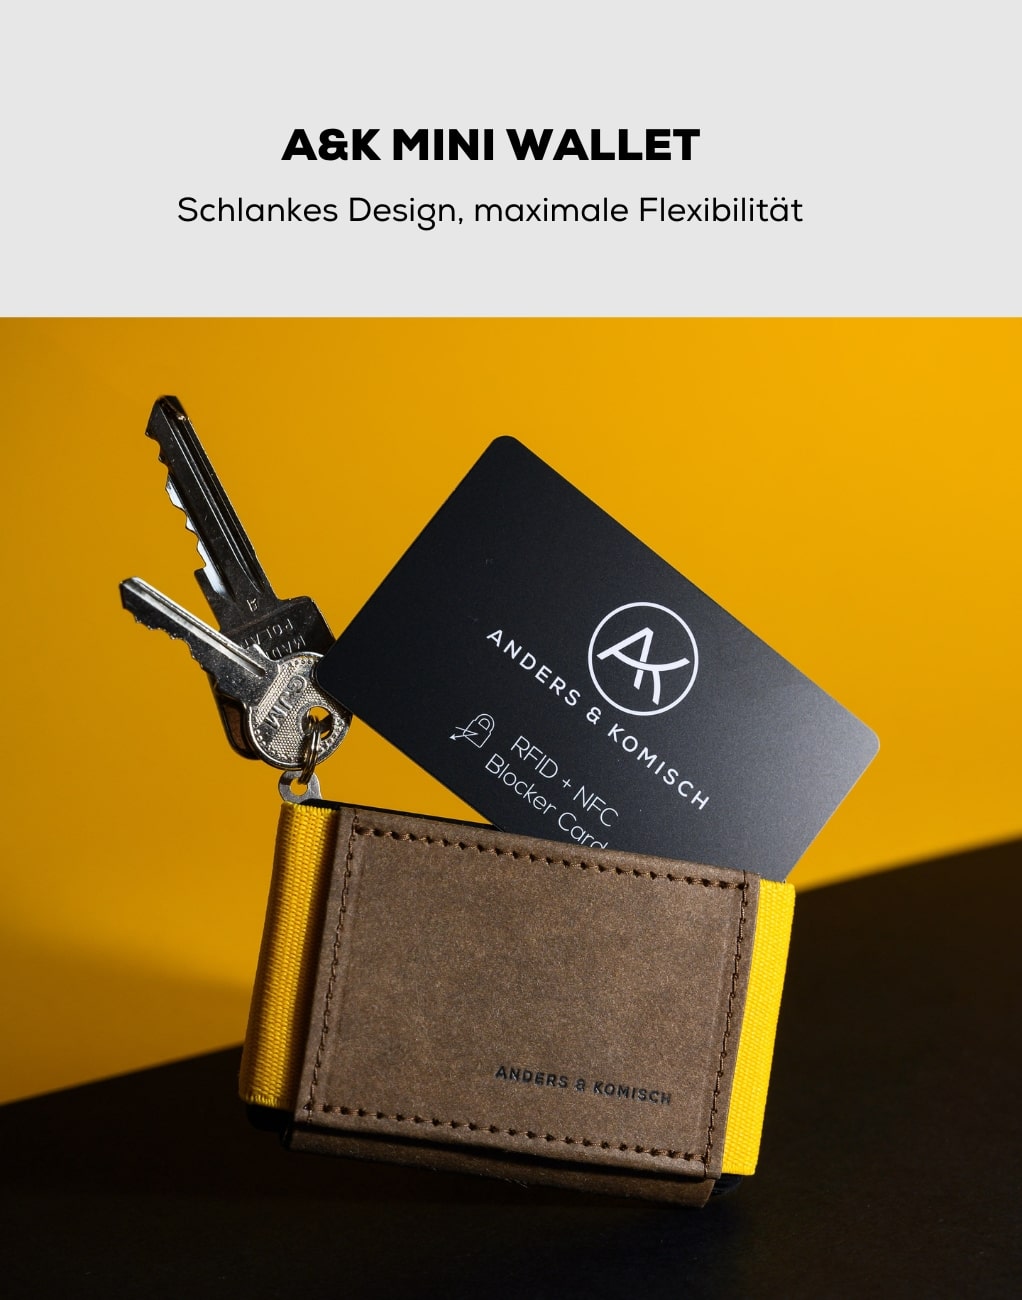 Mini Wallet  für Karten, Scheine und Münzen, mit RFID Schutz –